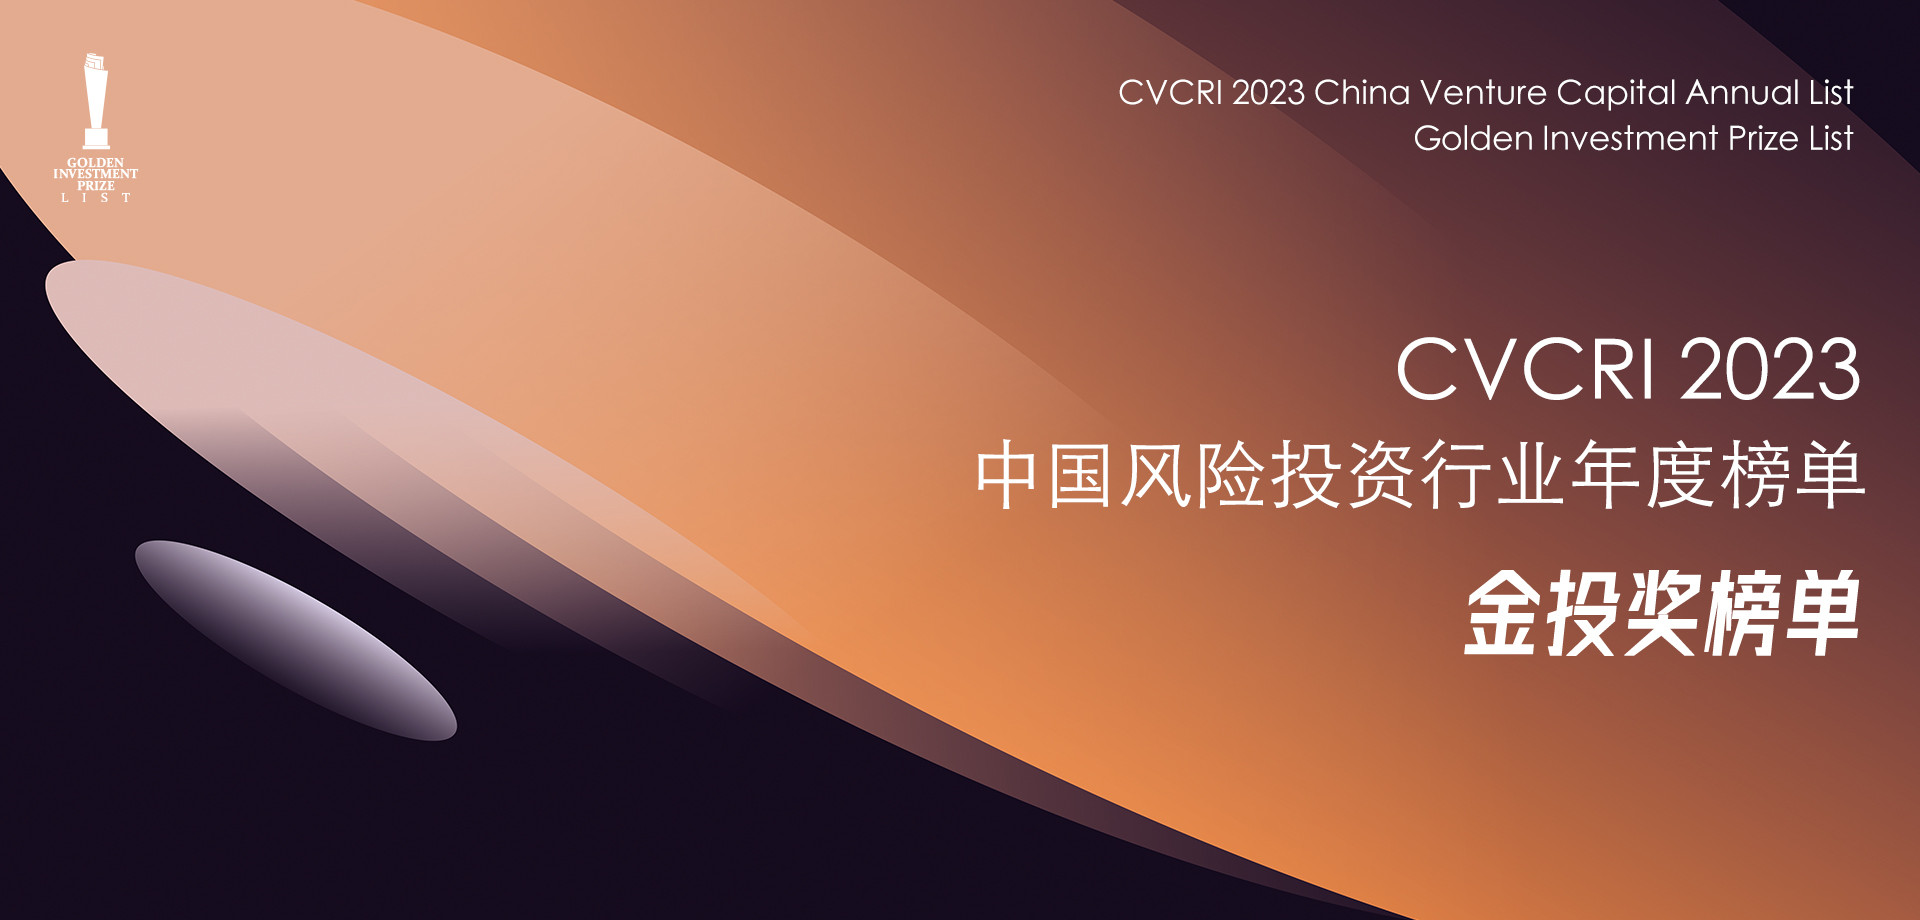 CVCRI·“金投奖”揭晓 | 远致富海荣膺2023年度中国影响力国资投资机构TOP50